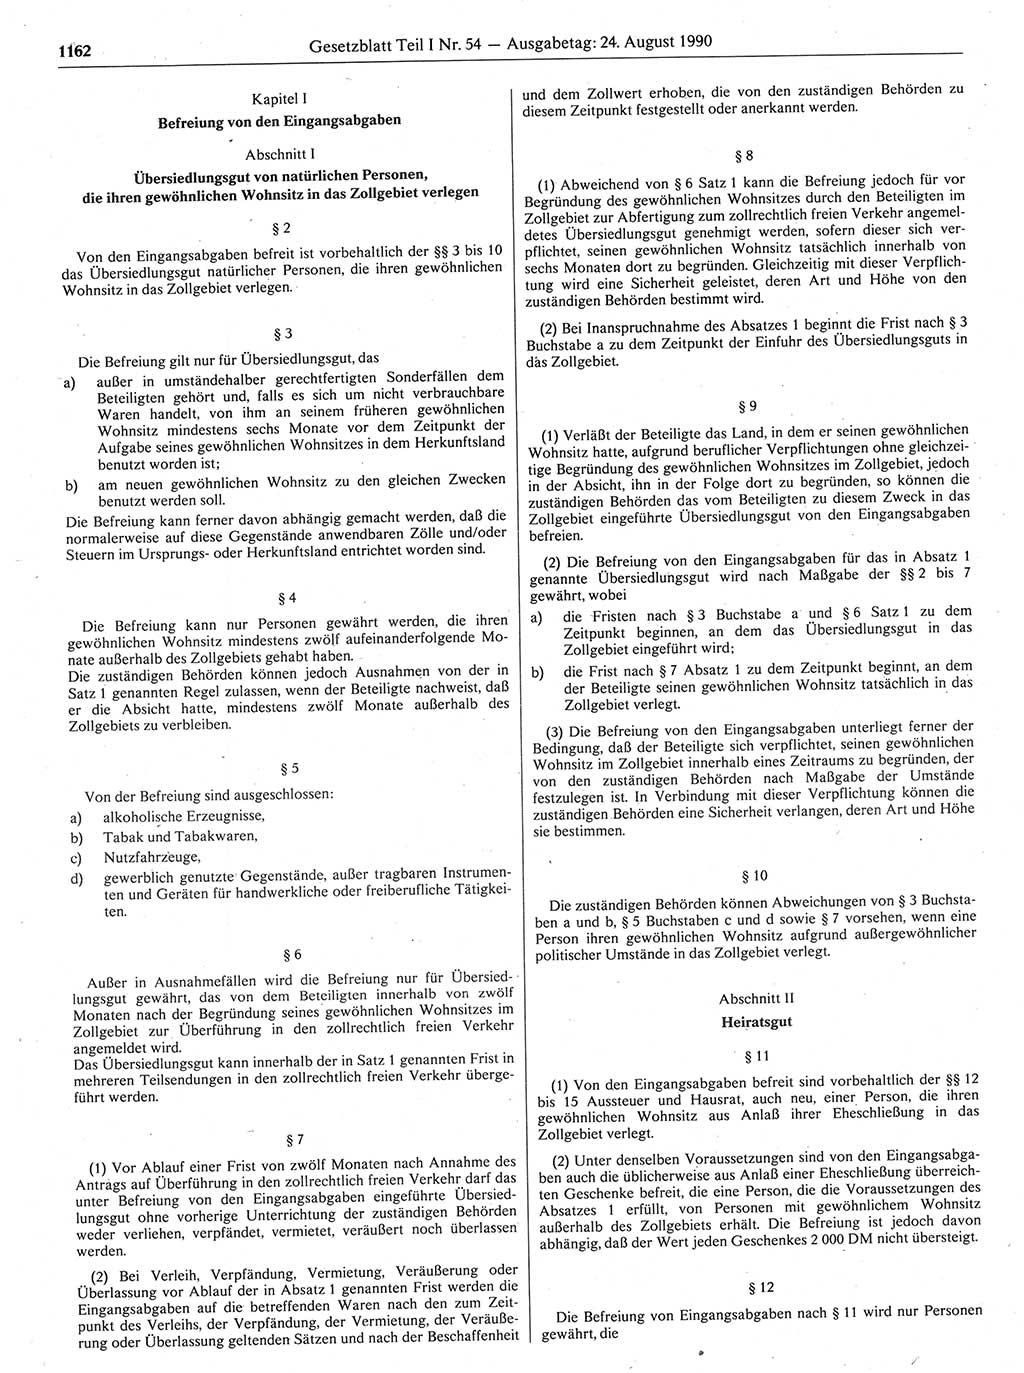 Gesetzblatt (GBl.) der Deutschen Demokratischen Republik (DDR) Teil Ⅰ 1990, Seite 1162 (GBl. DDR Ⅰ 1990, S. 1162)